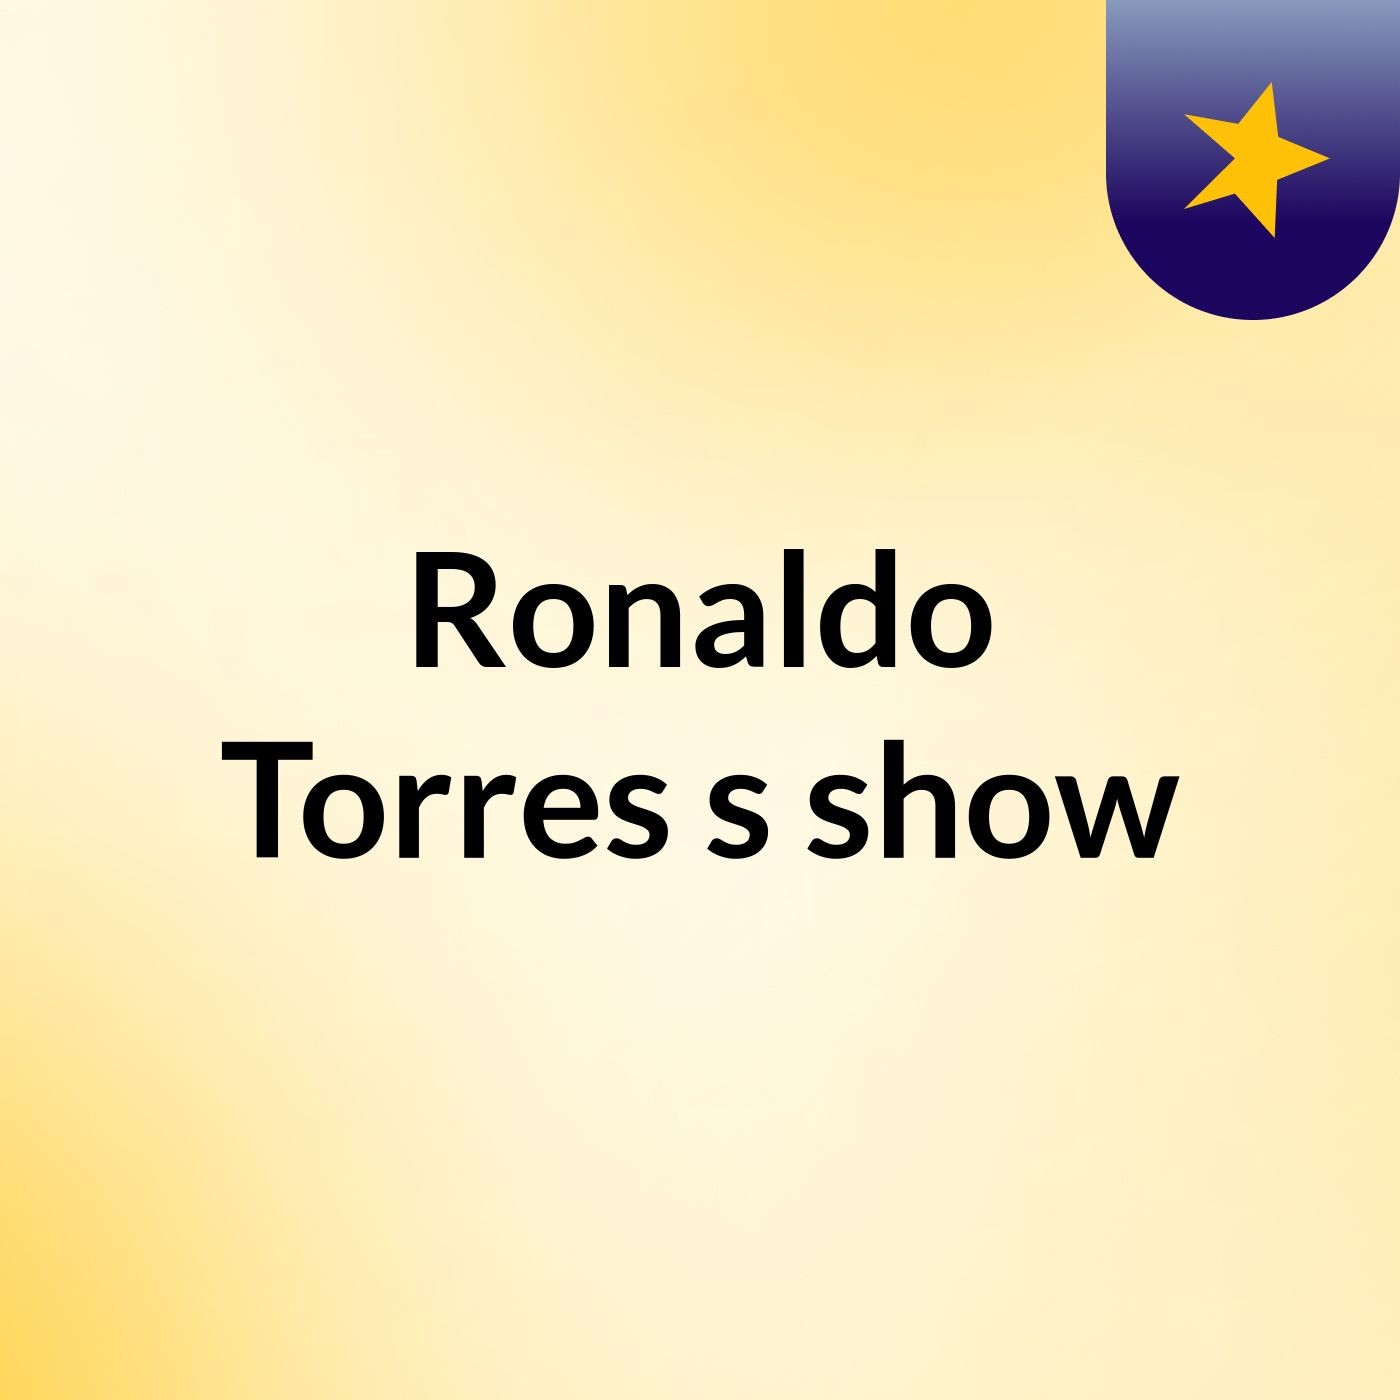 Ronaldo Torres's show